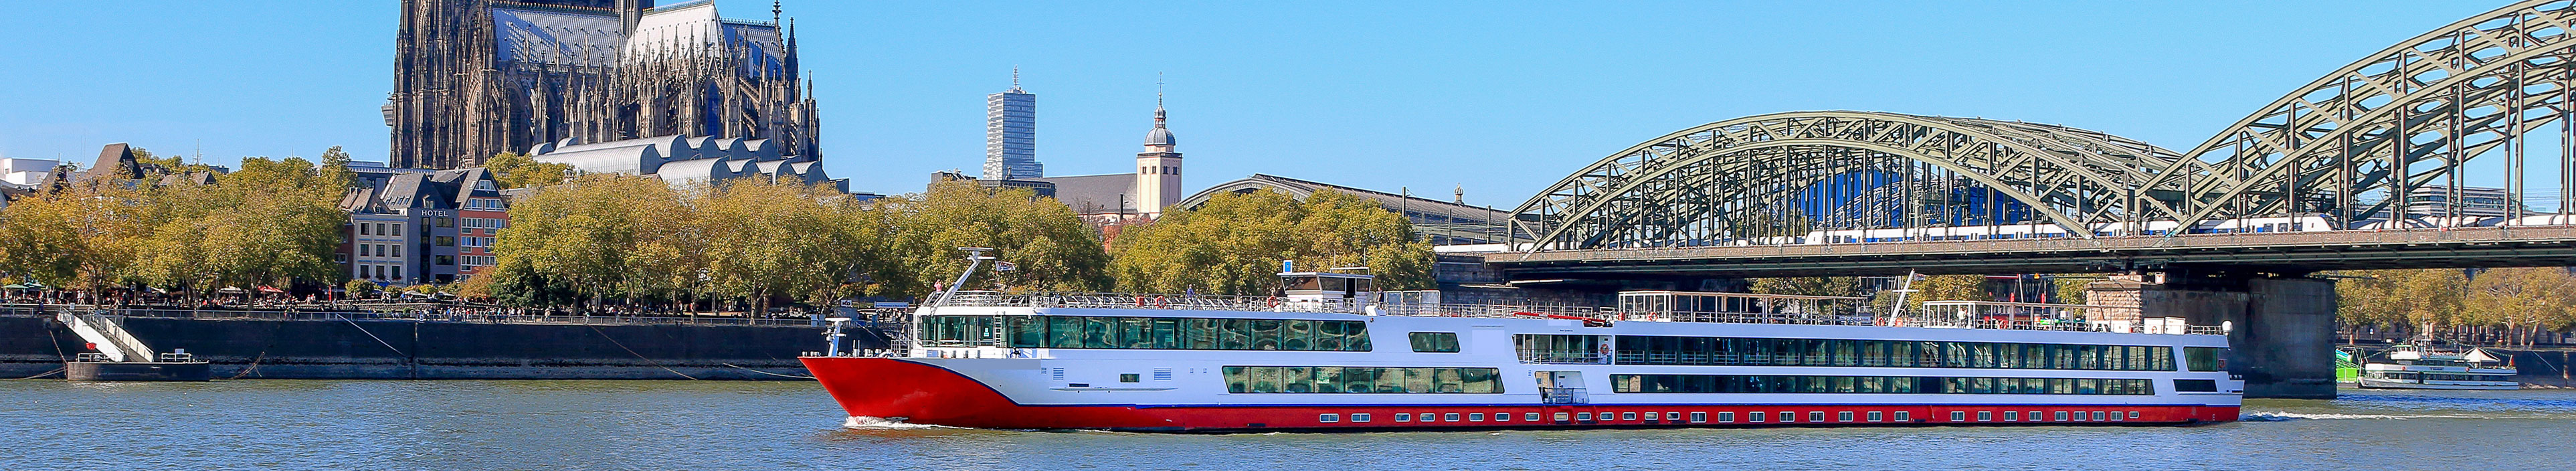 Flusskreuzfahrt-Schiff in Köln auf dem Rhein